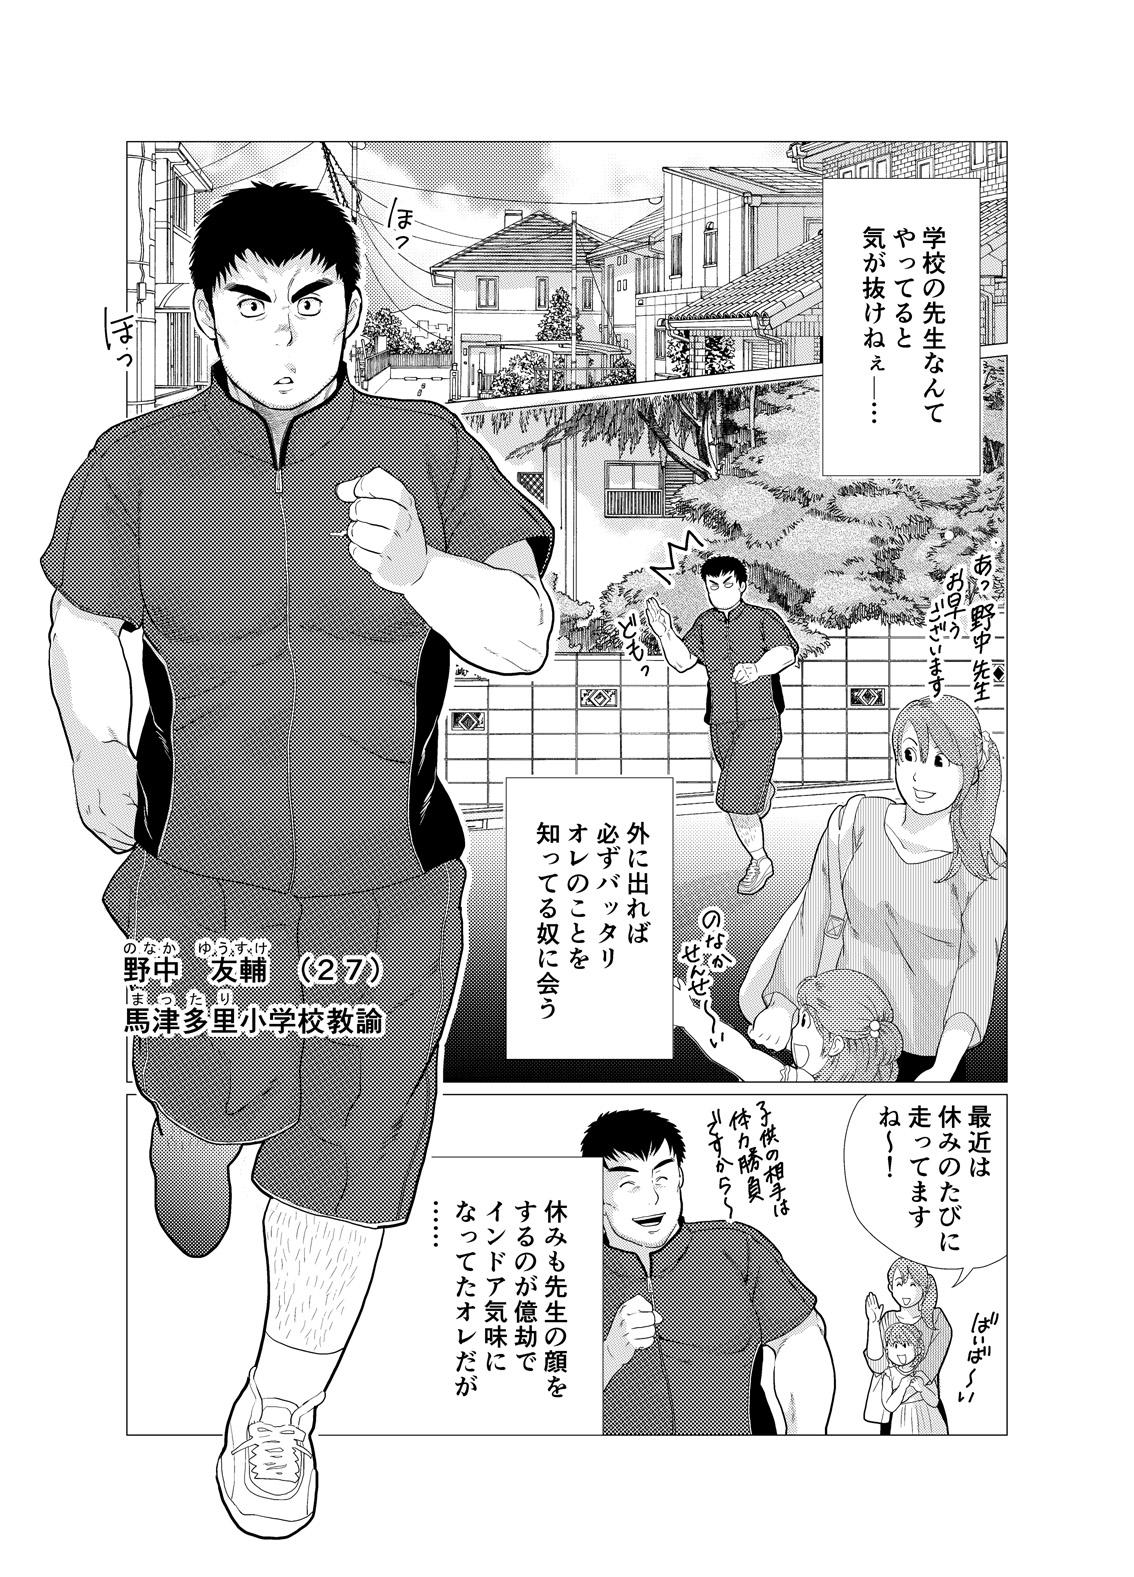 Girlfriend Ikenai desu! Nonaka-sensei - Original Behind - Page 3